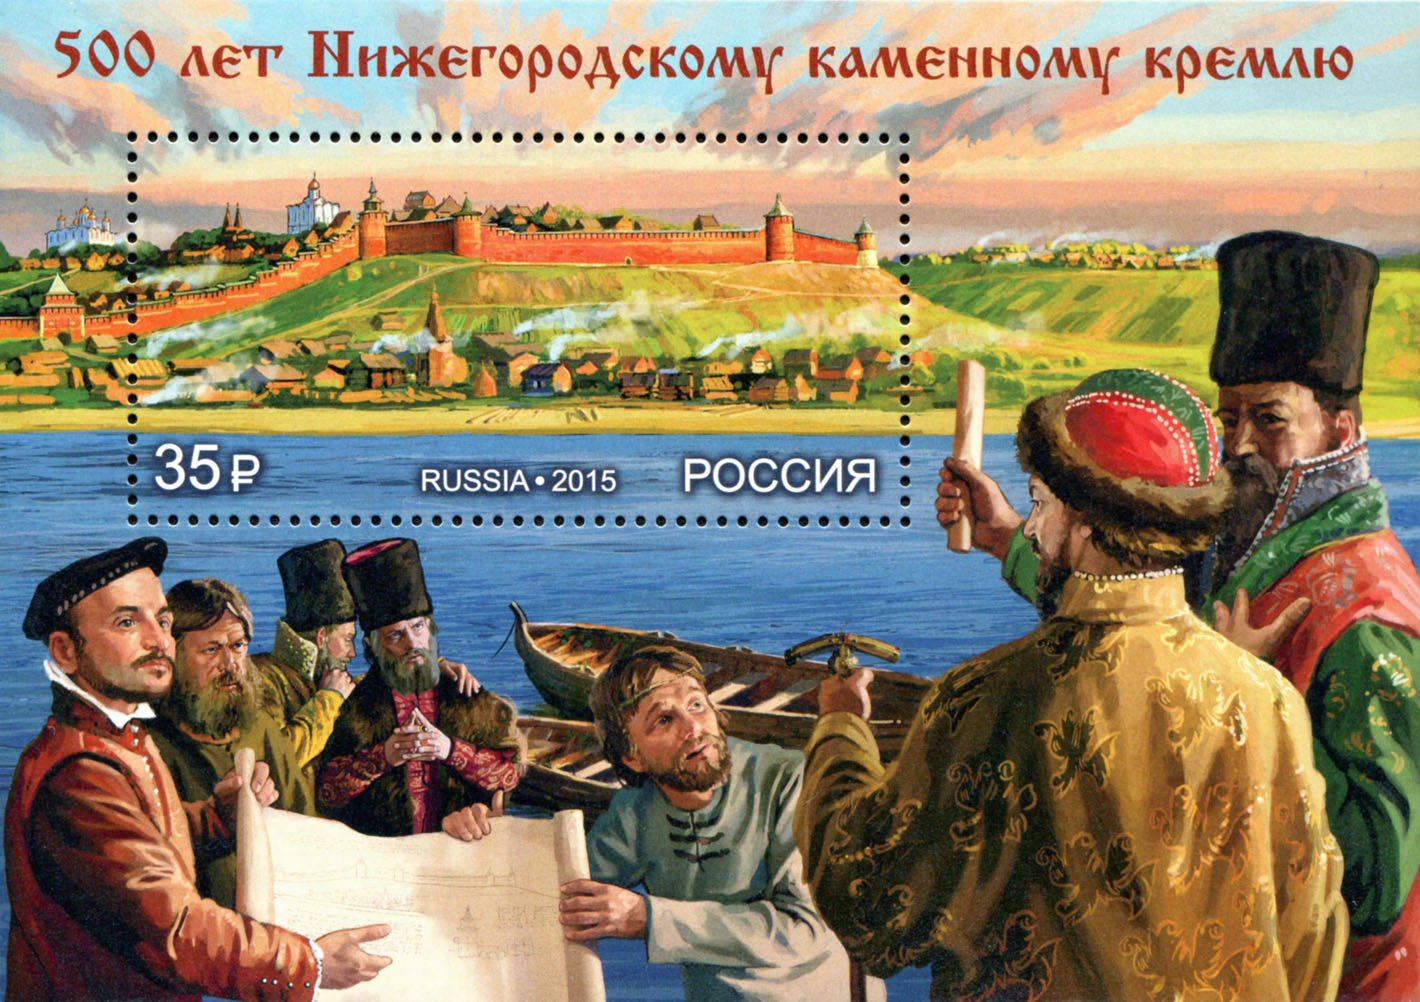 500 лет Нижегородскому каменному кремлю